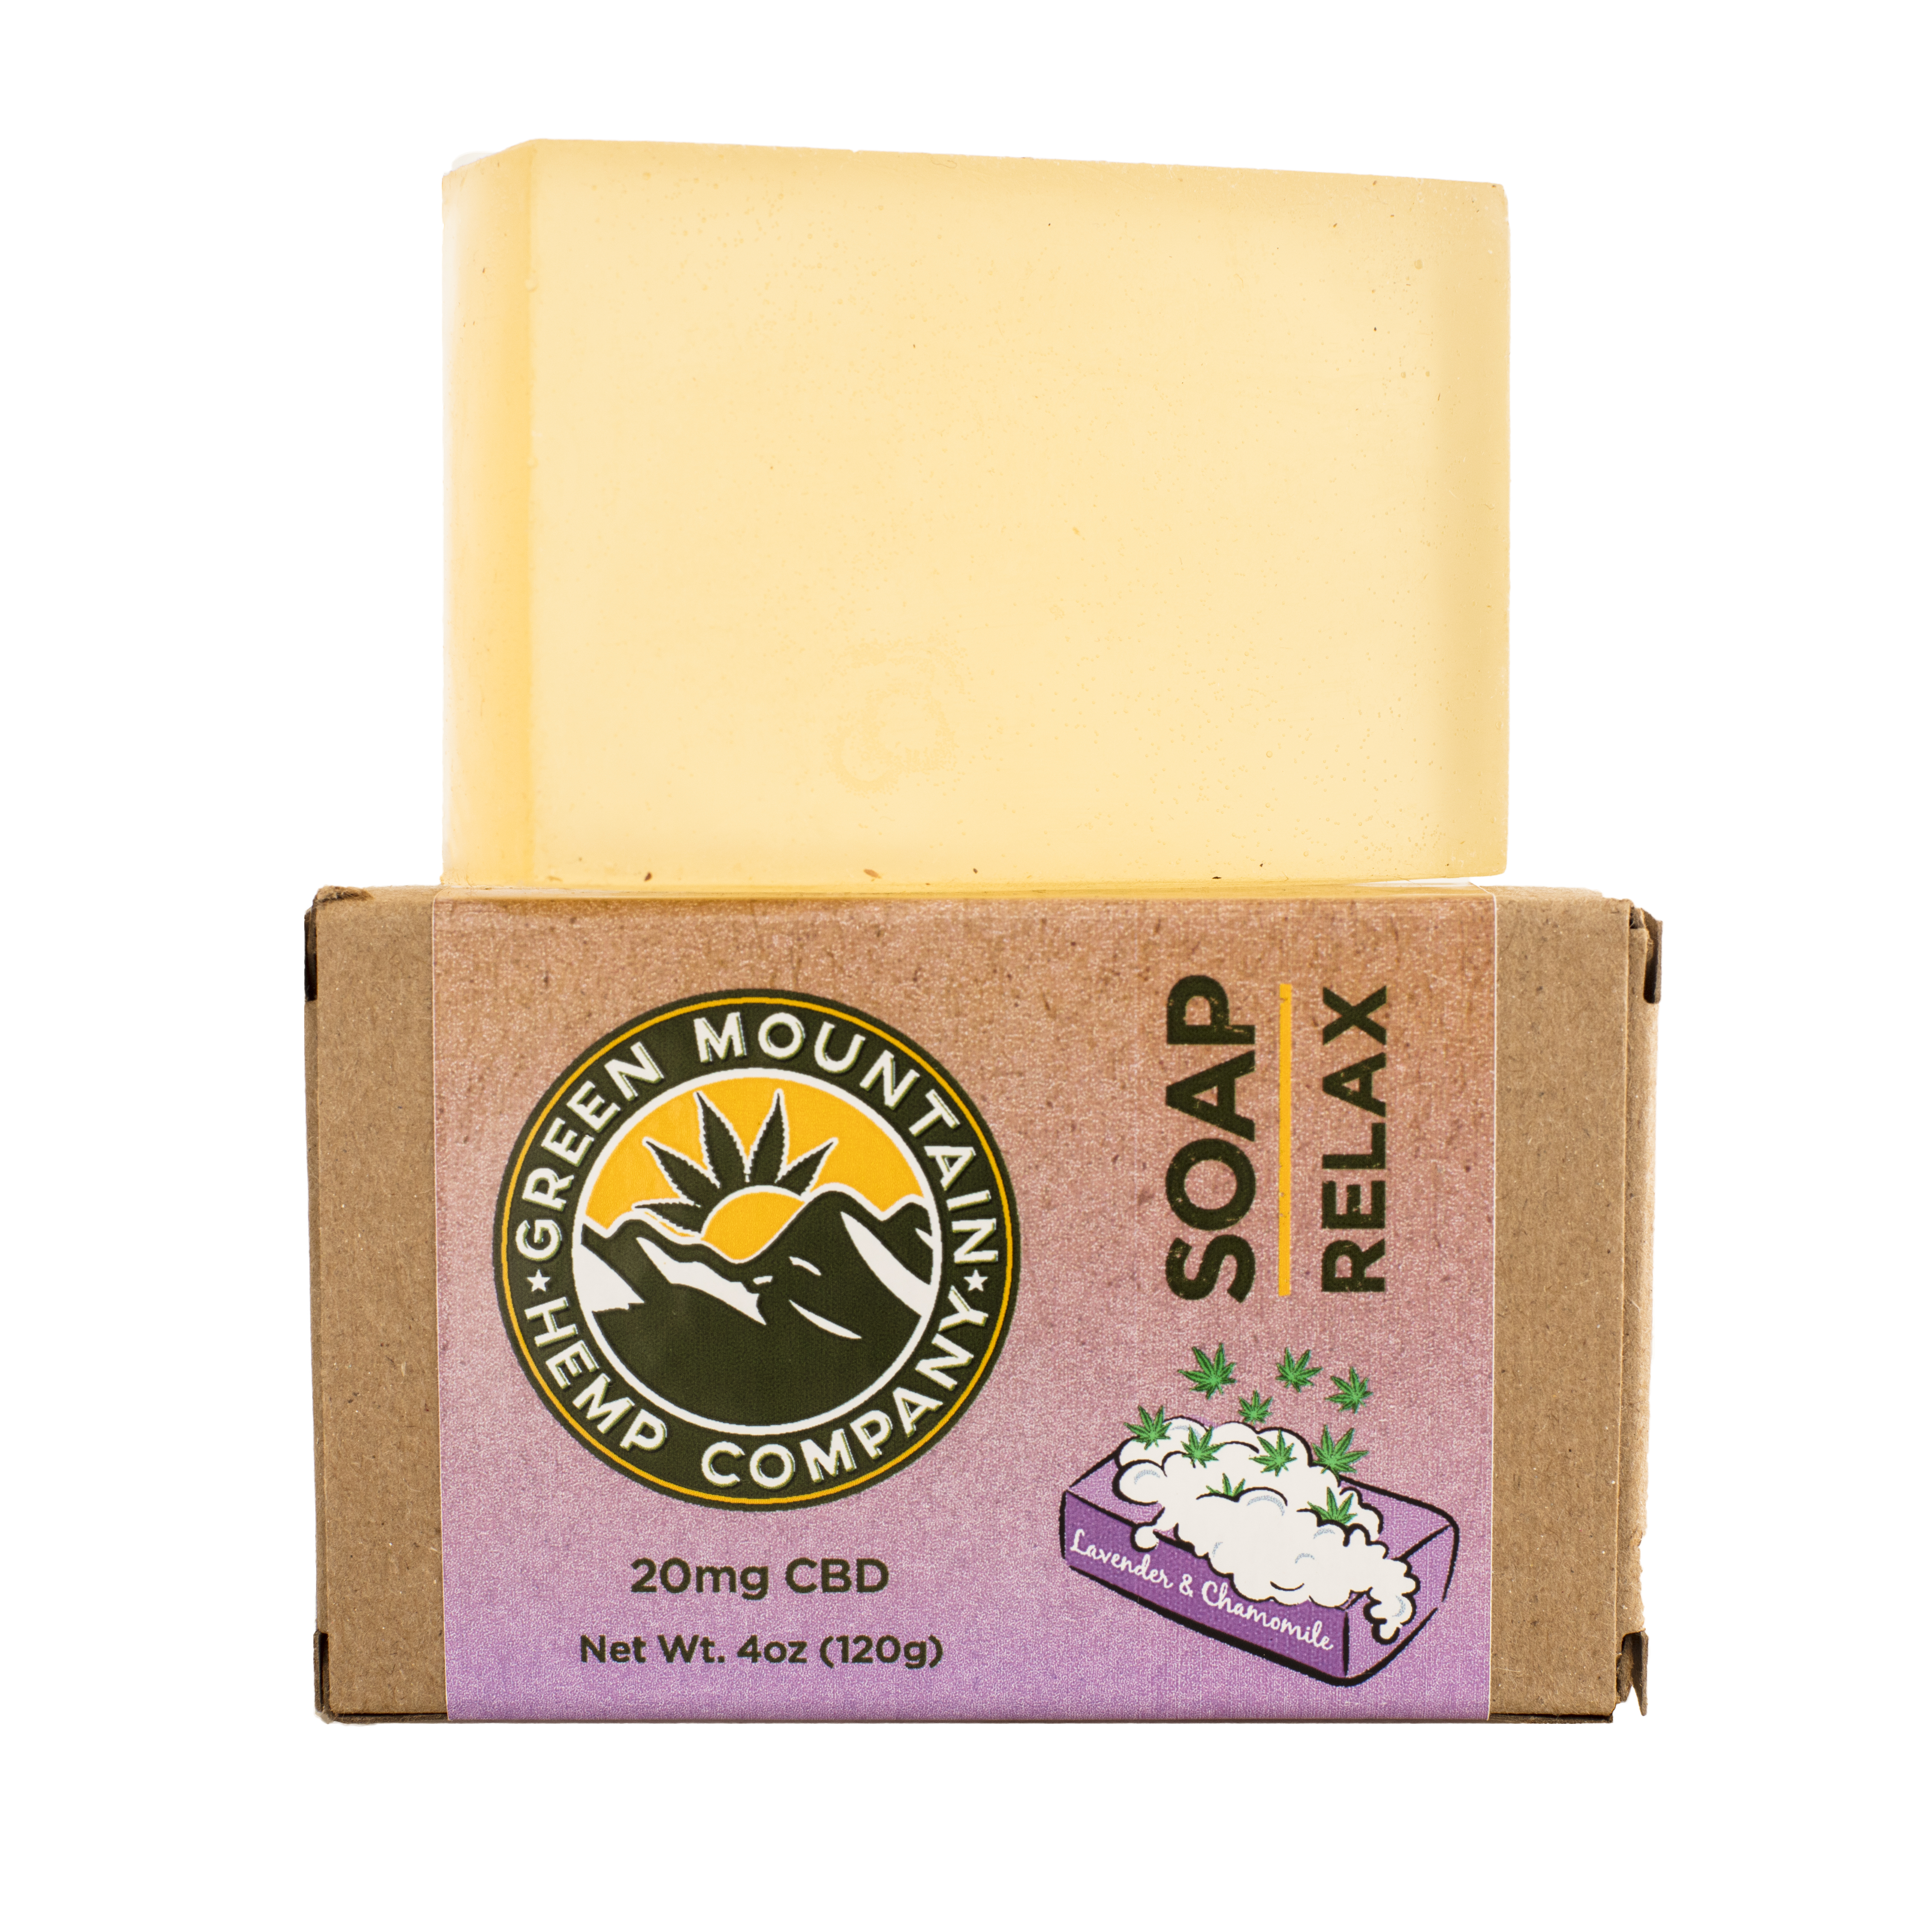 CBD Soap from Green Mountain Hemp Company